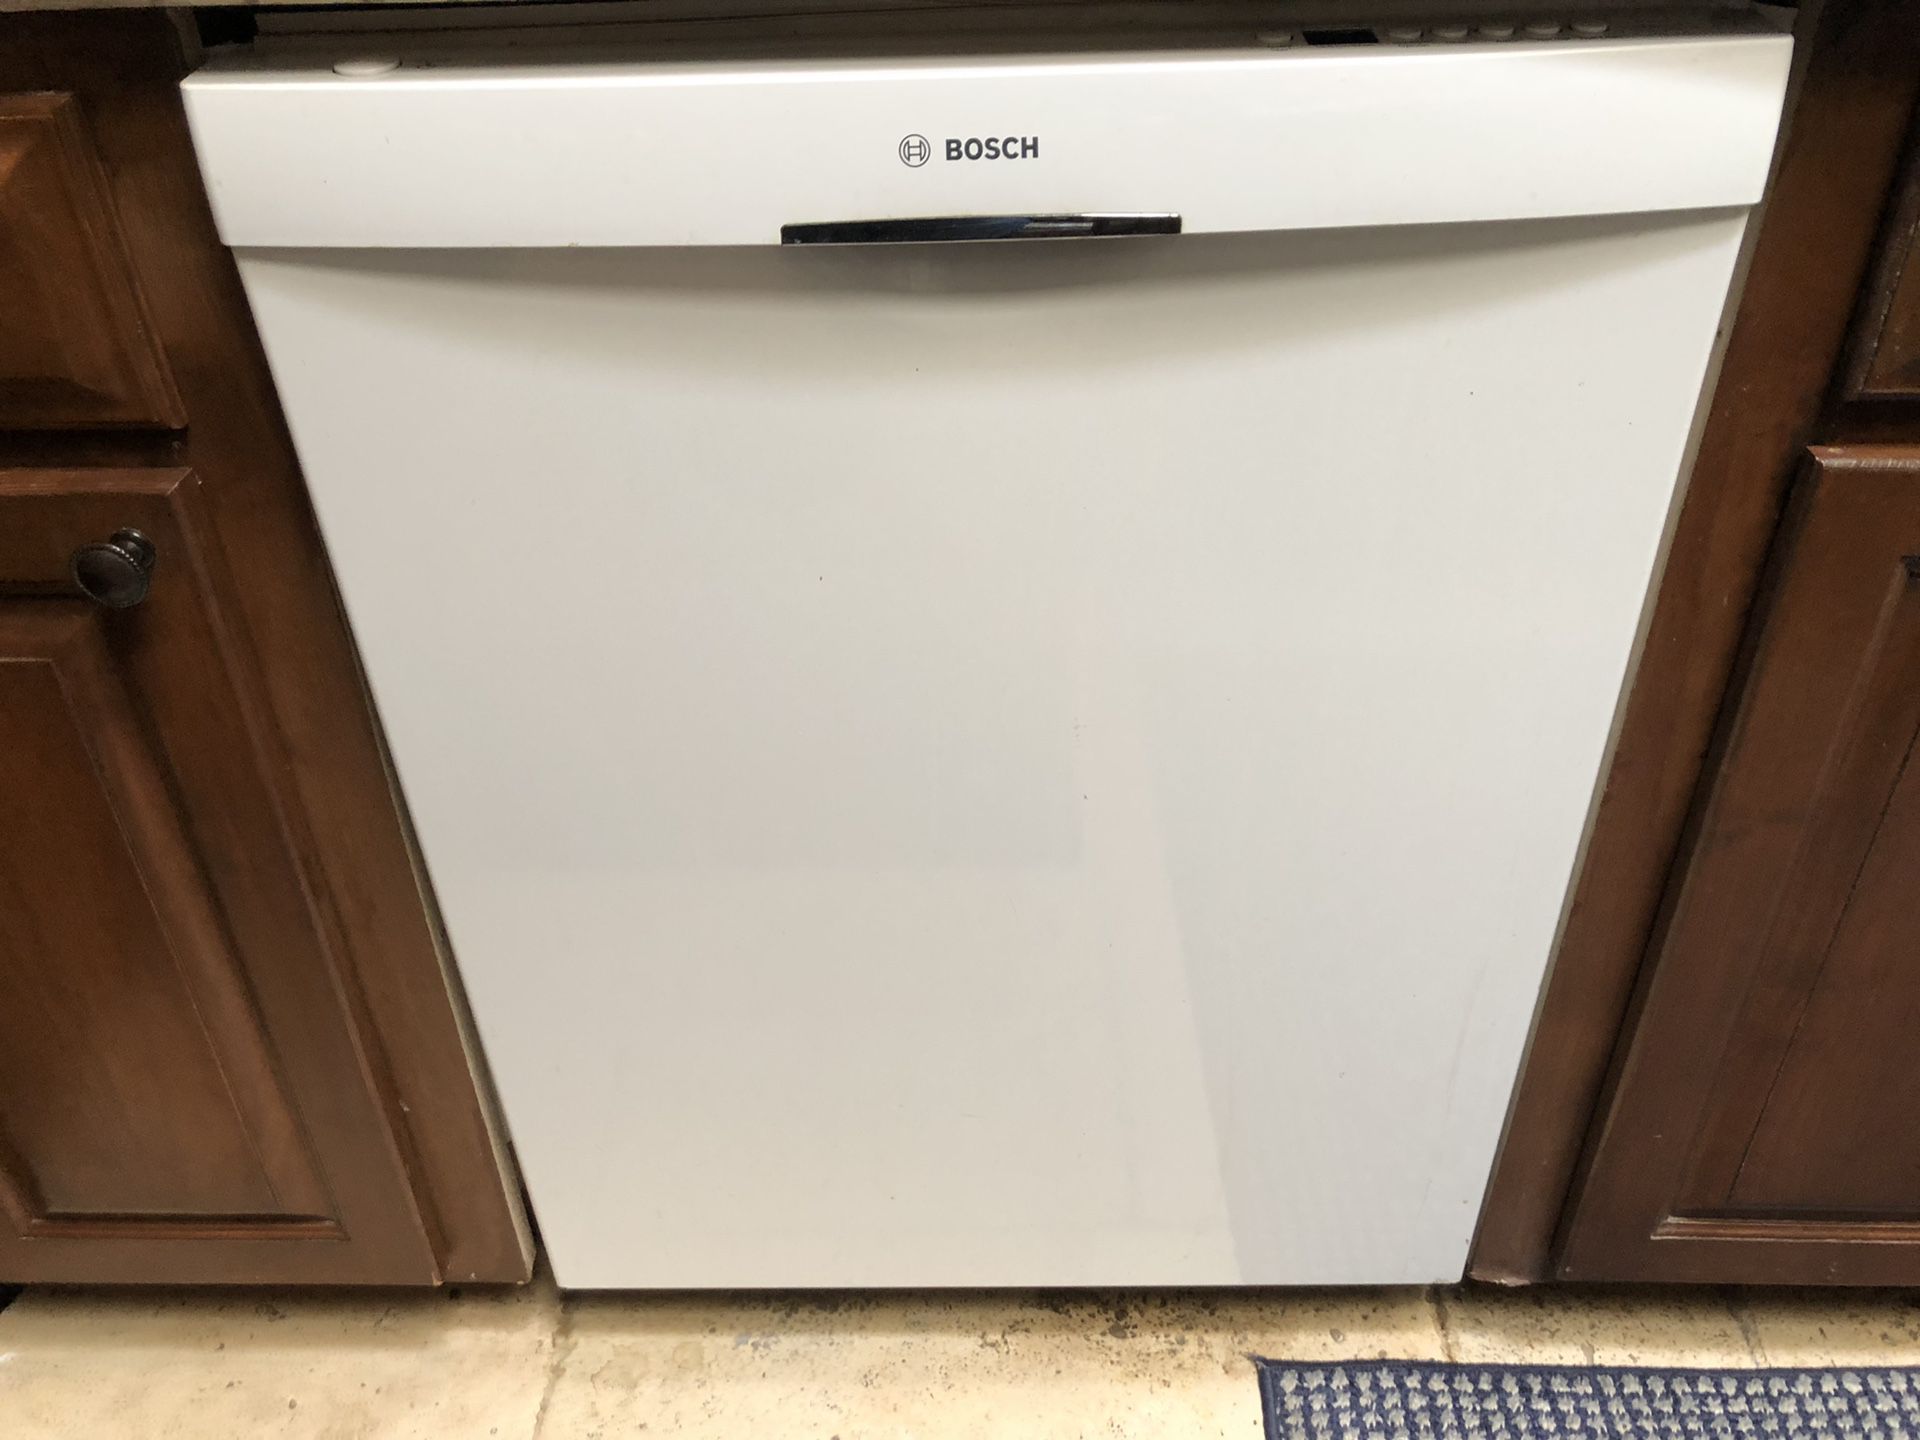 BOSCH Dishwasher - 300 DLX Series